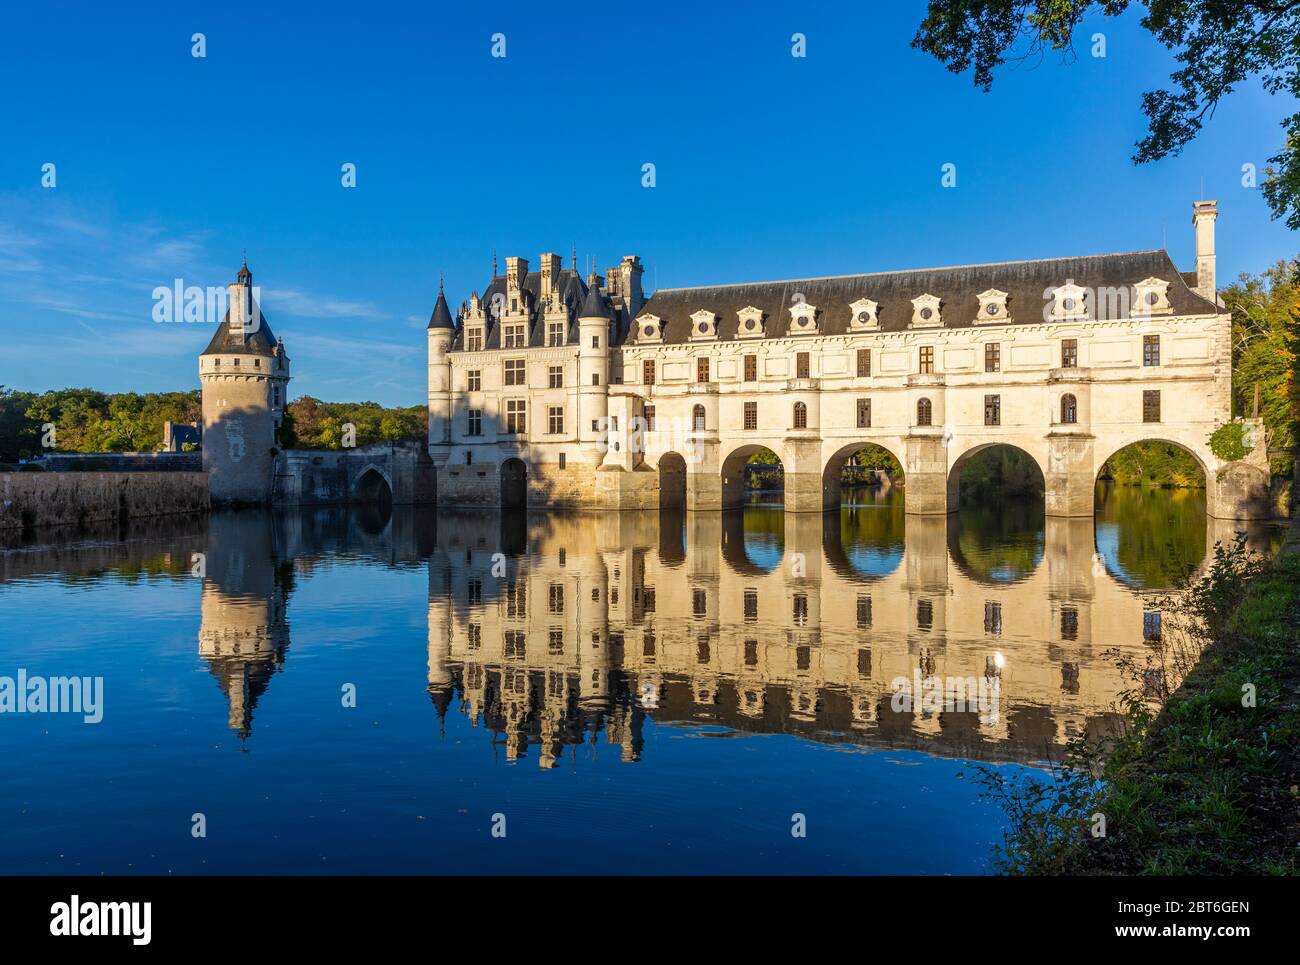 Vue sur le coucher du soleil sur le château romantique de Chenonceaux, l'un des châteaux les plus connus de la vallée de la Loire, en France Banque D'Images